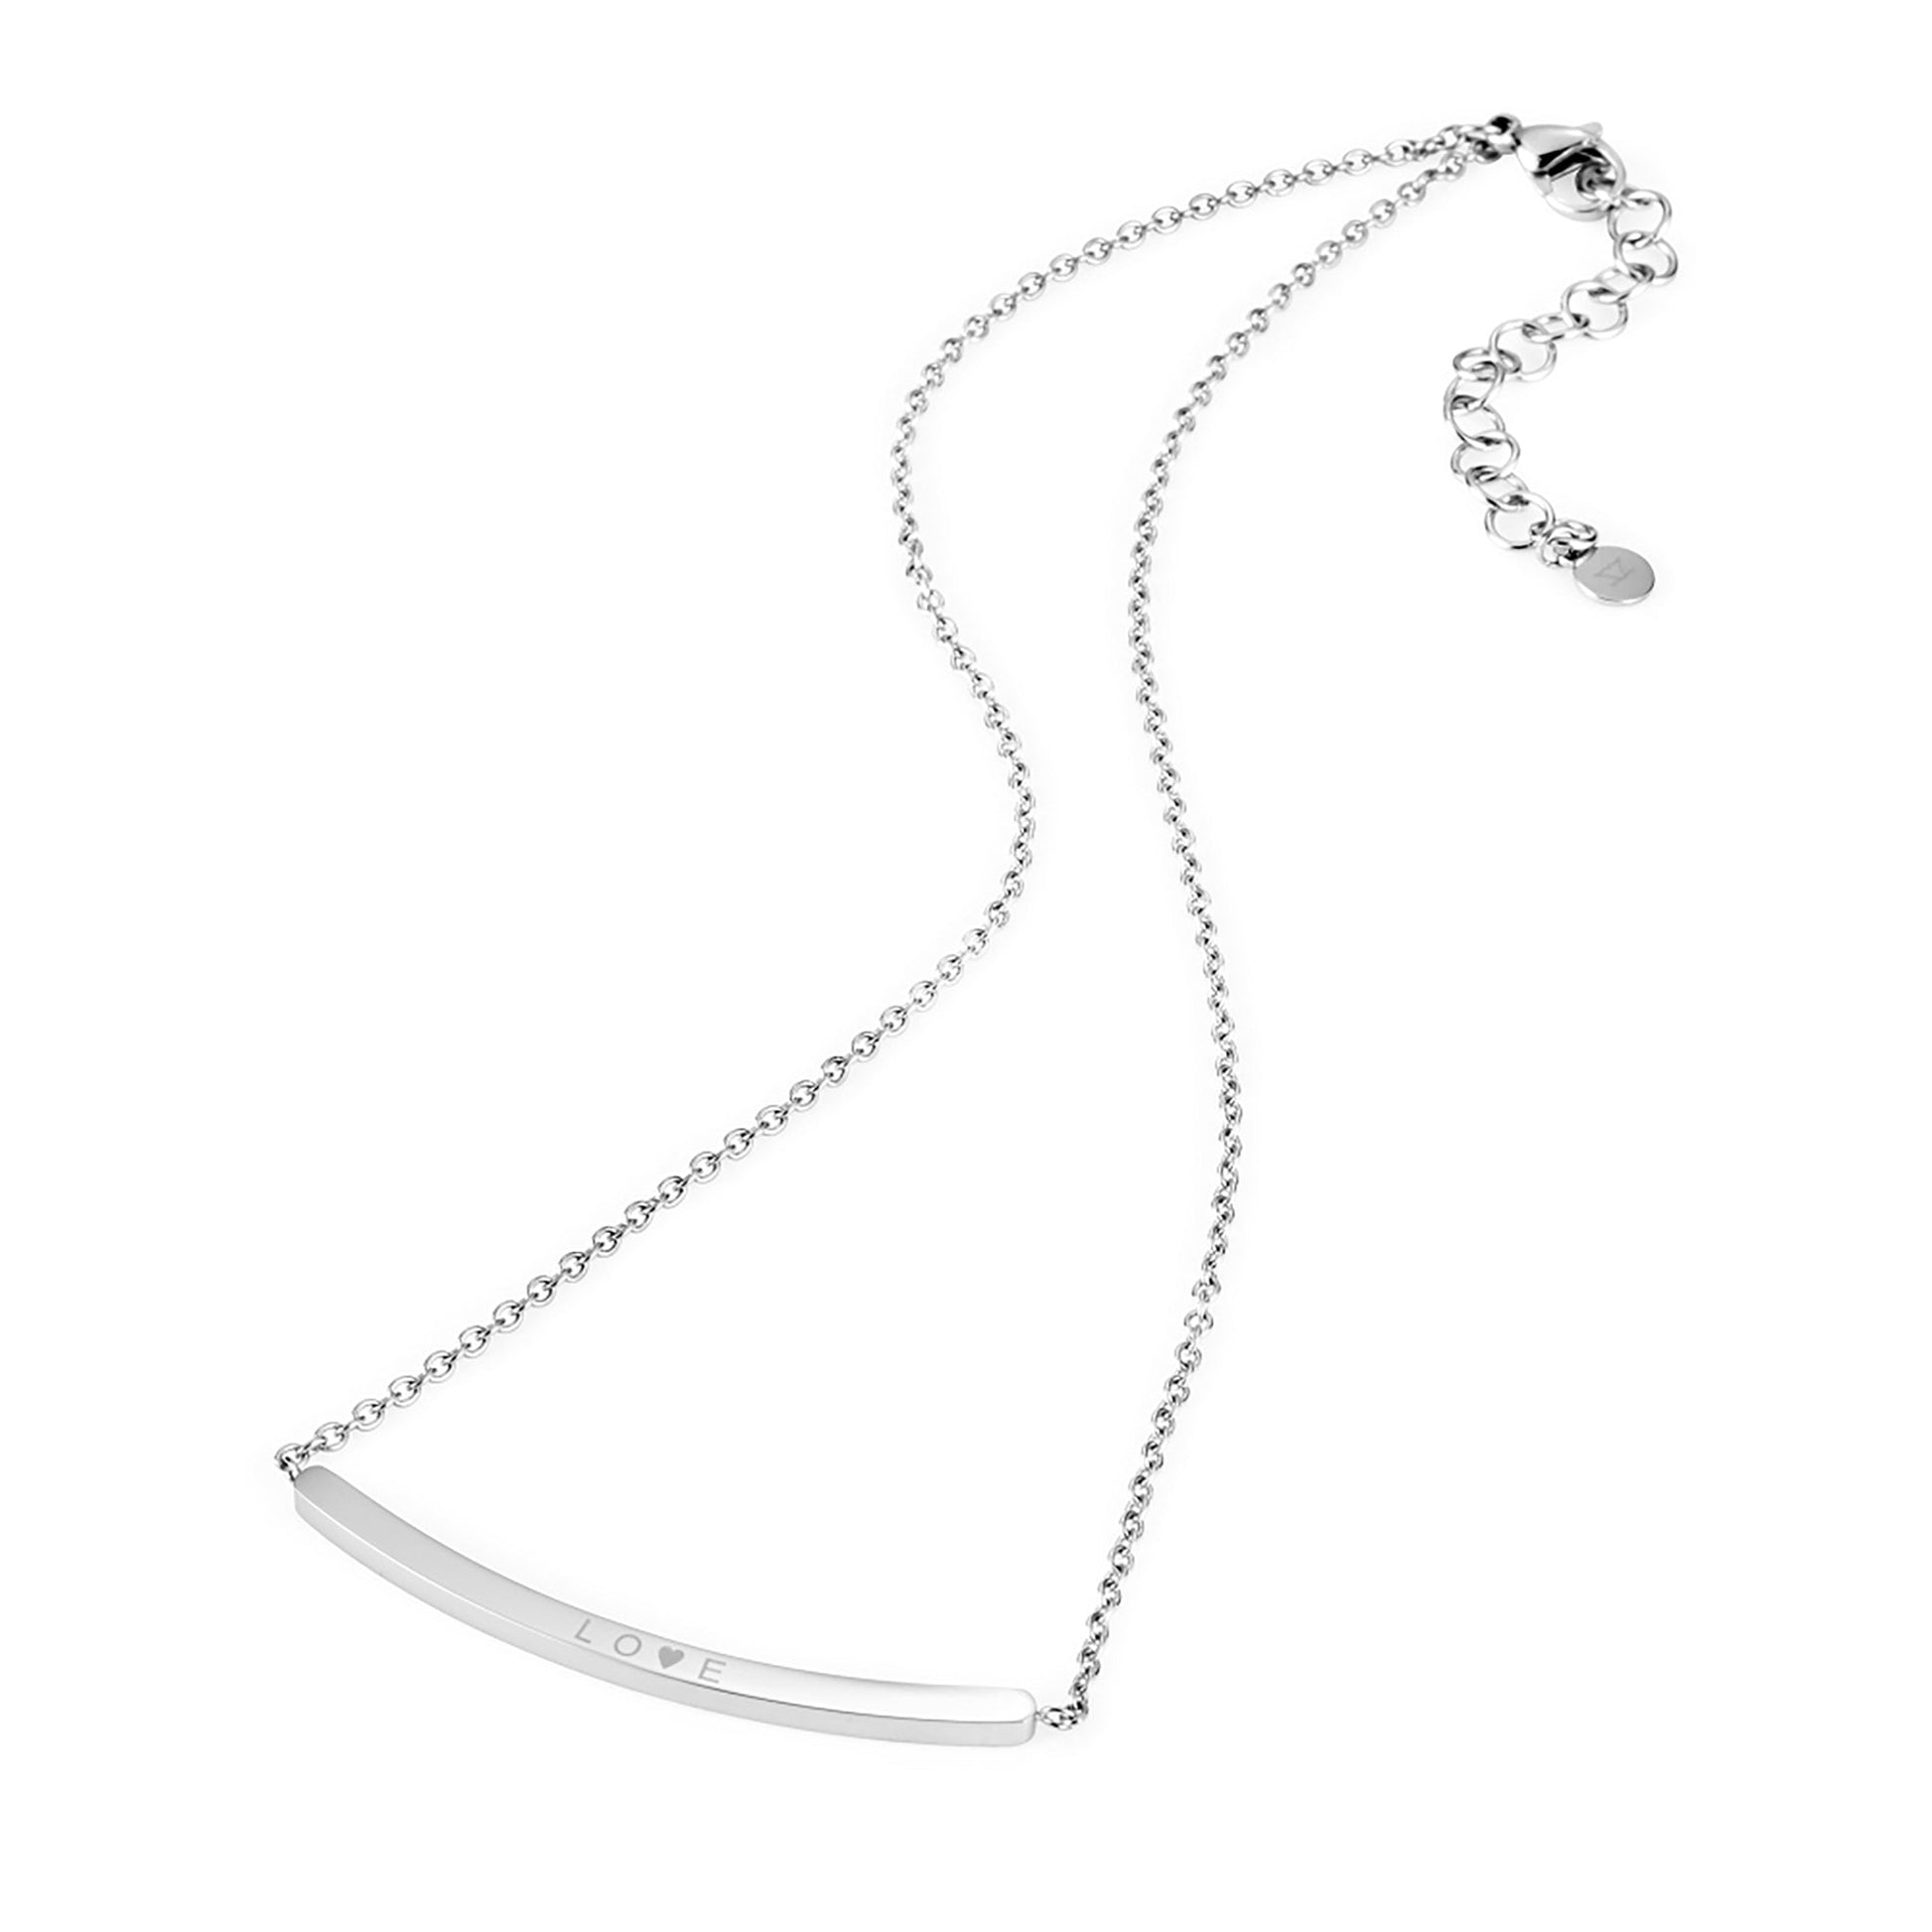 ZFNL001S ZINK Women's Necklaces